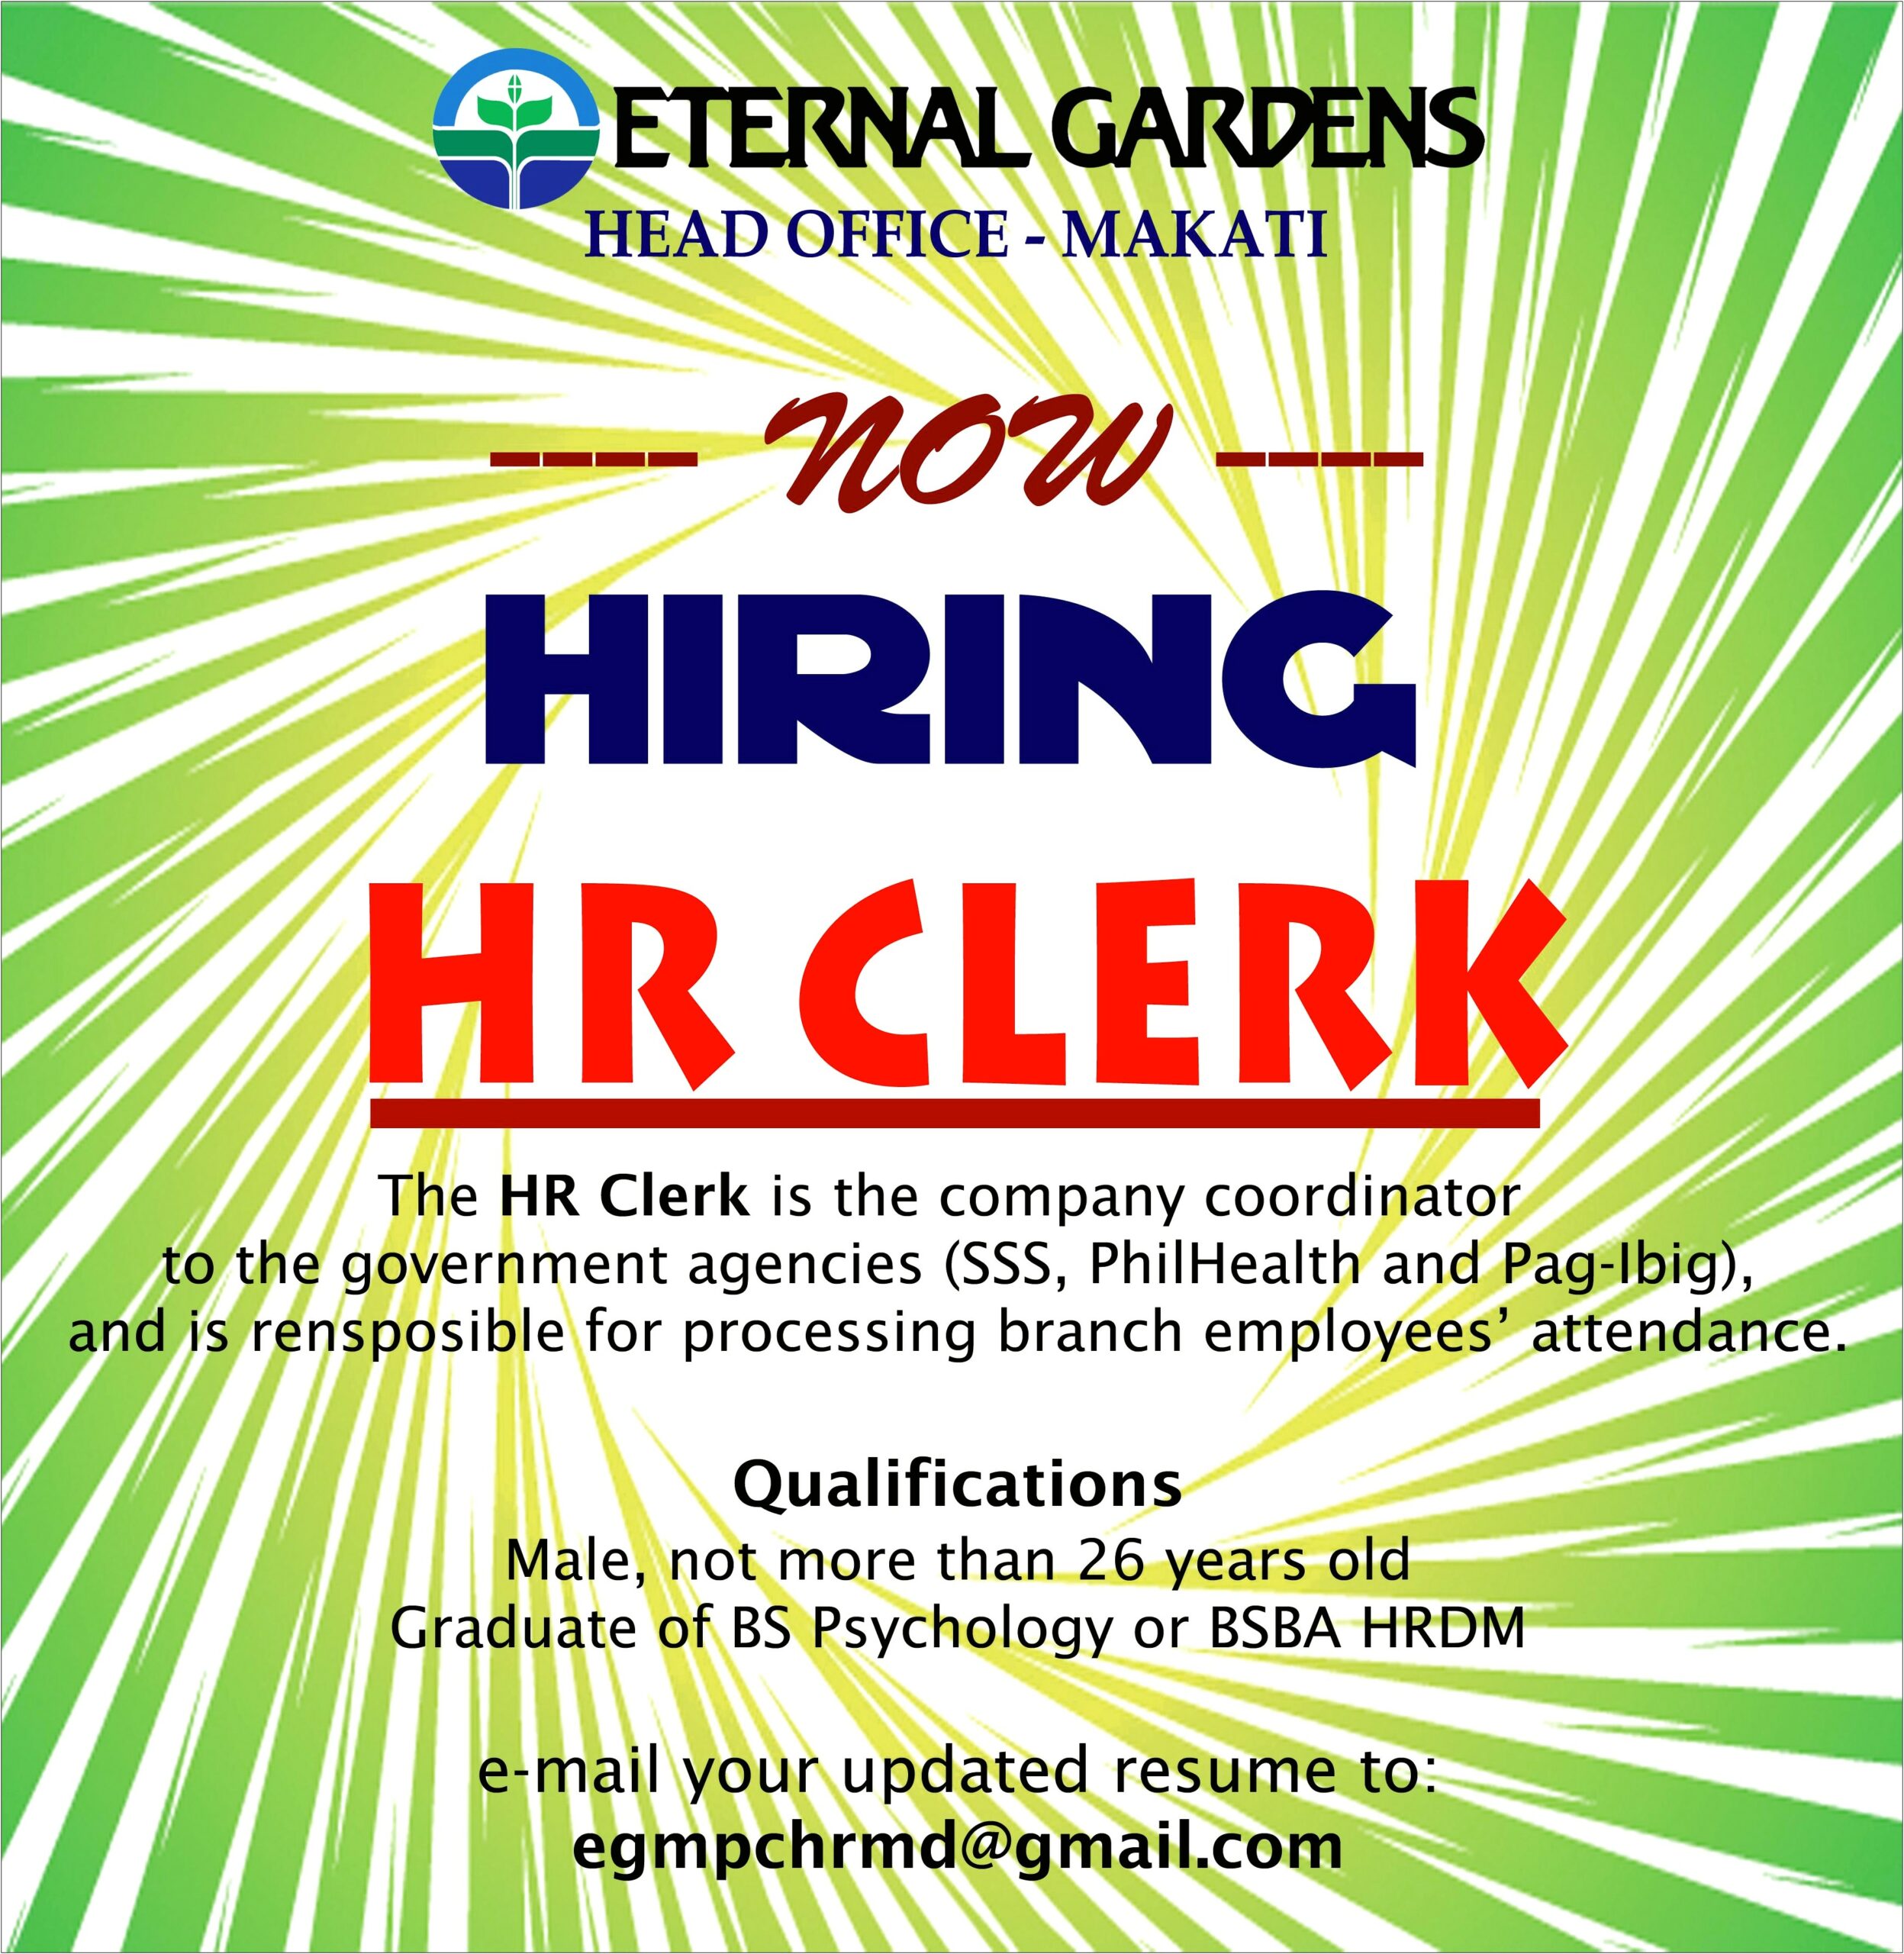 Hr Clerk Job Description For Resume